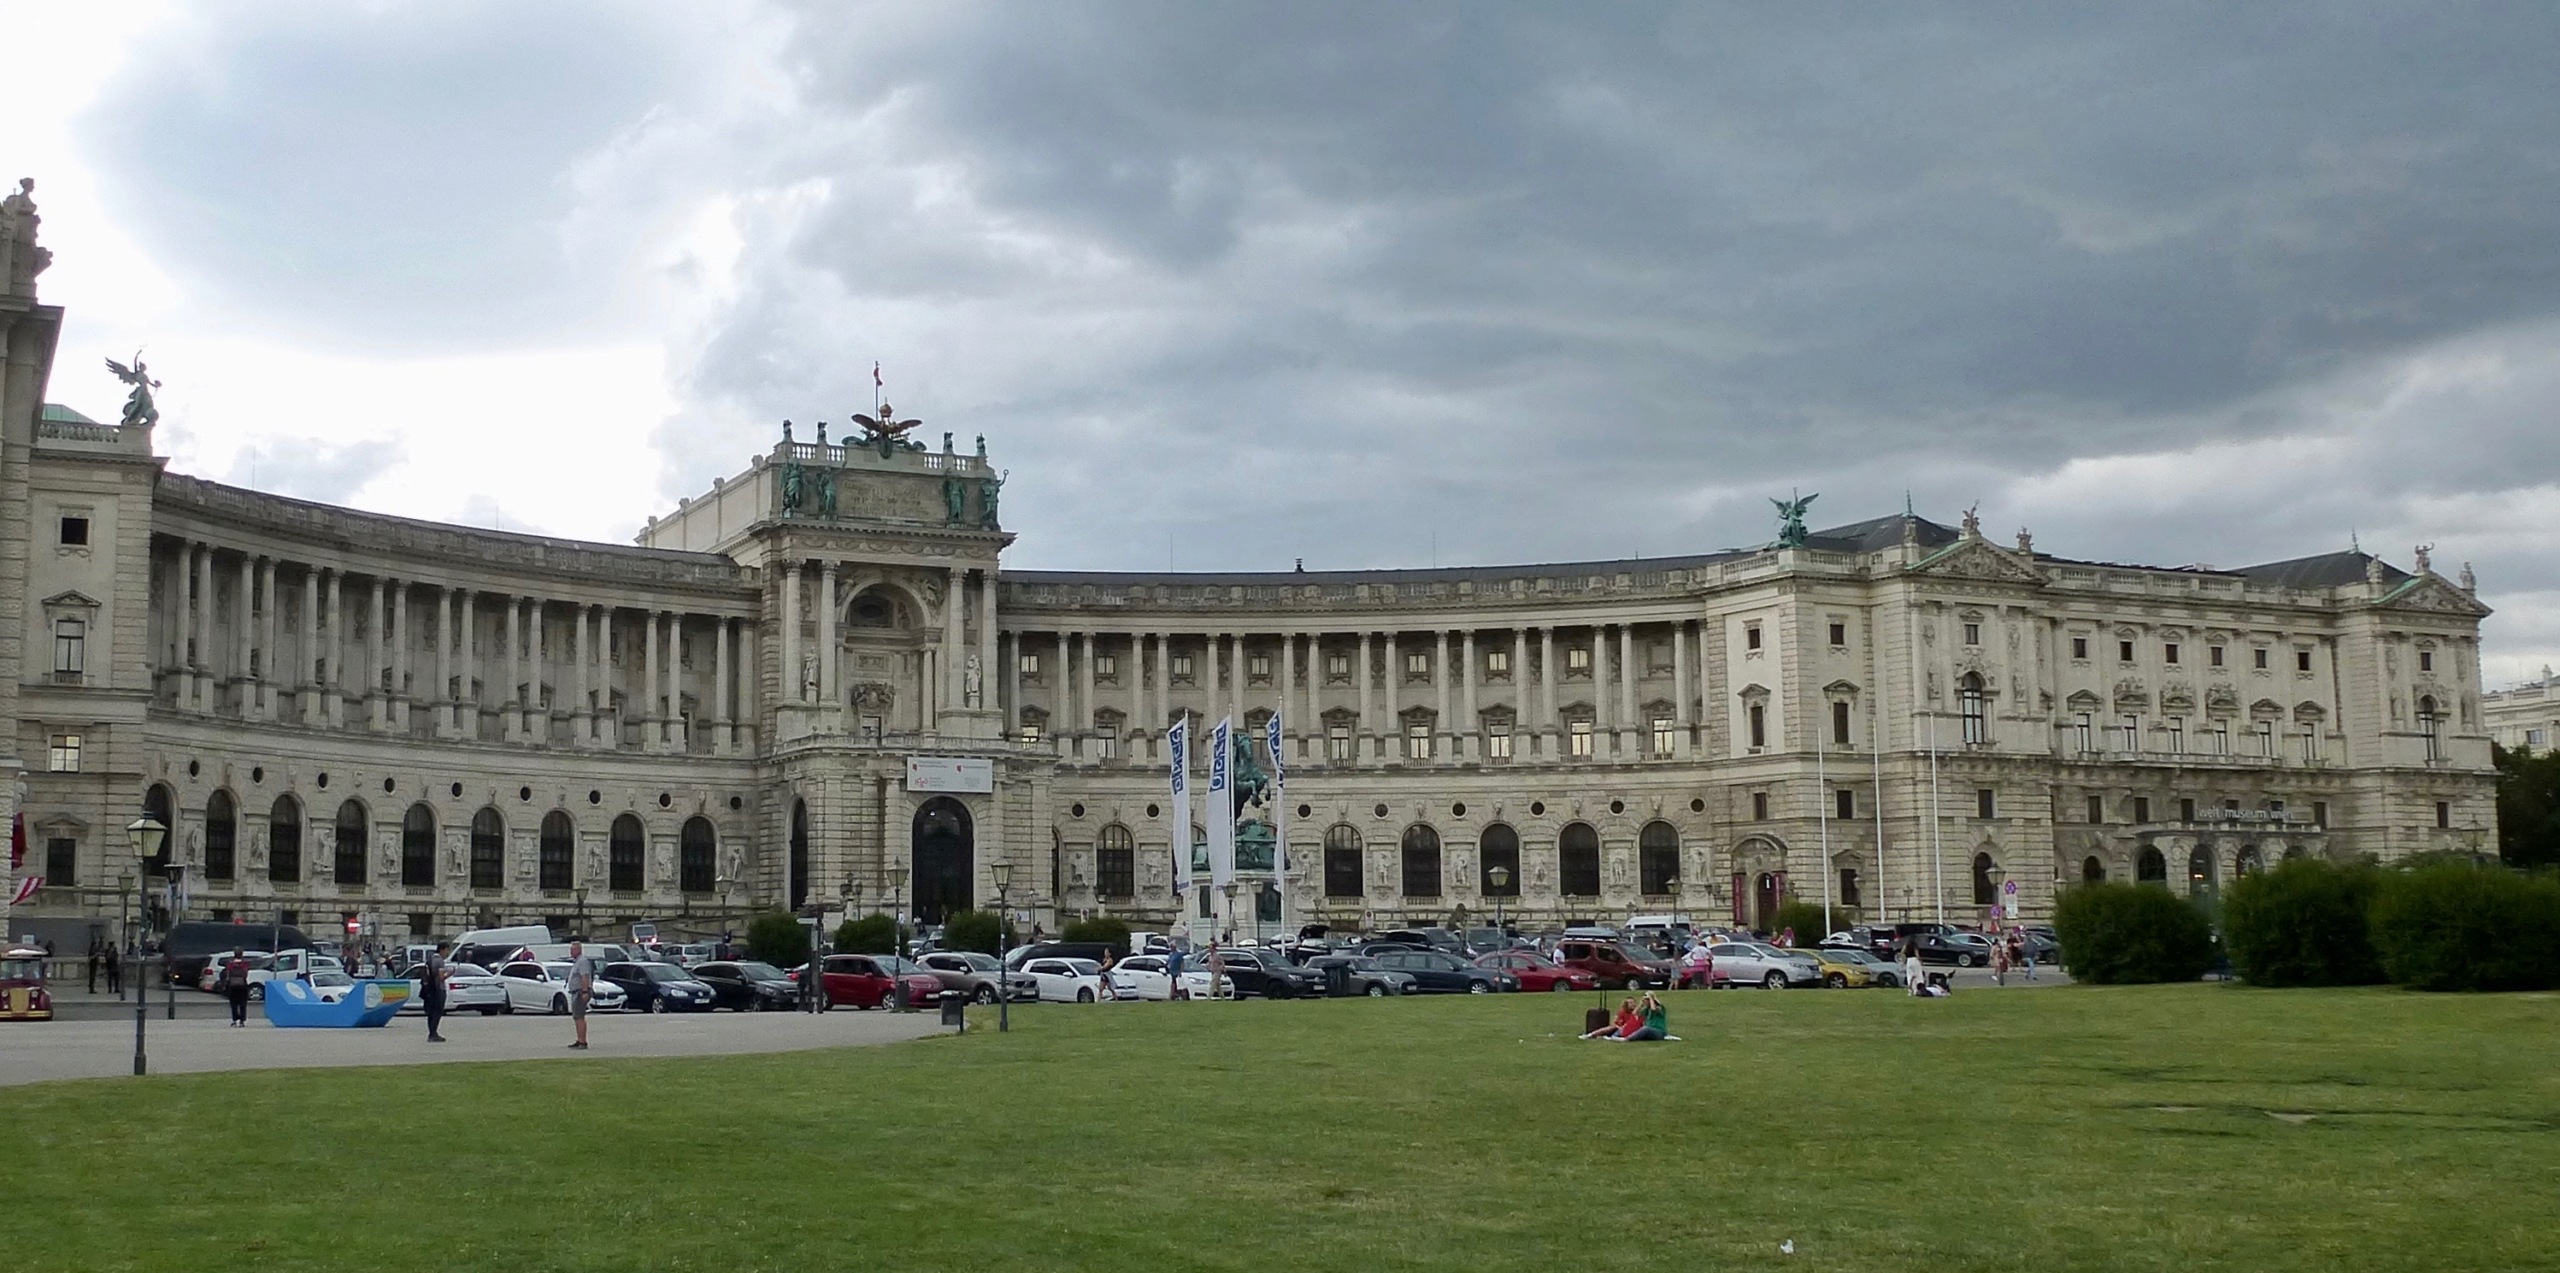 Carnet de voyage: quelques jours à Vienne (Autriche) 16-p1111